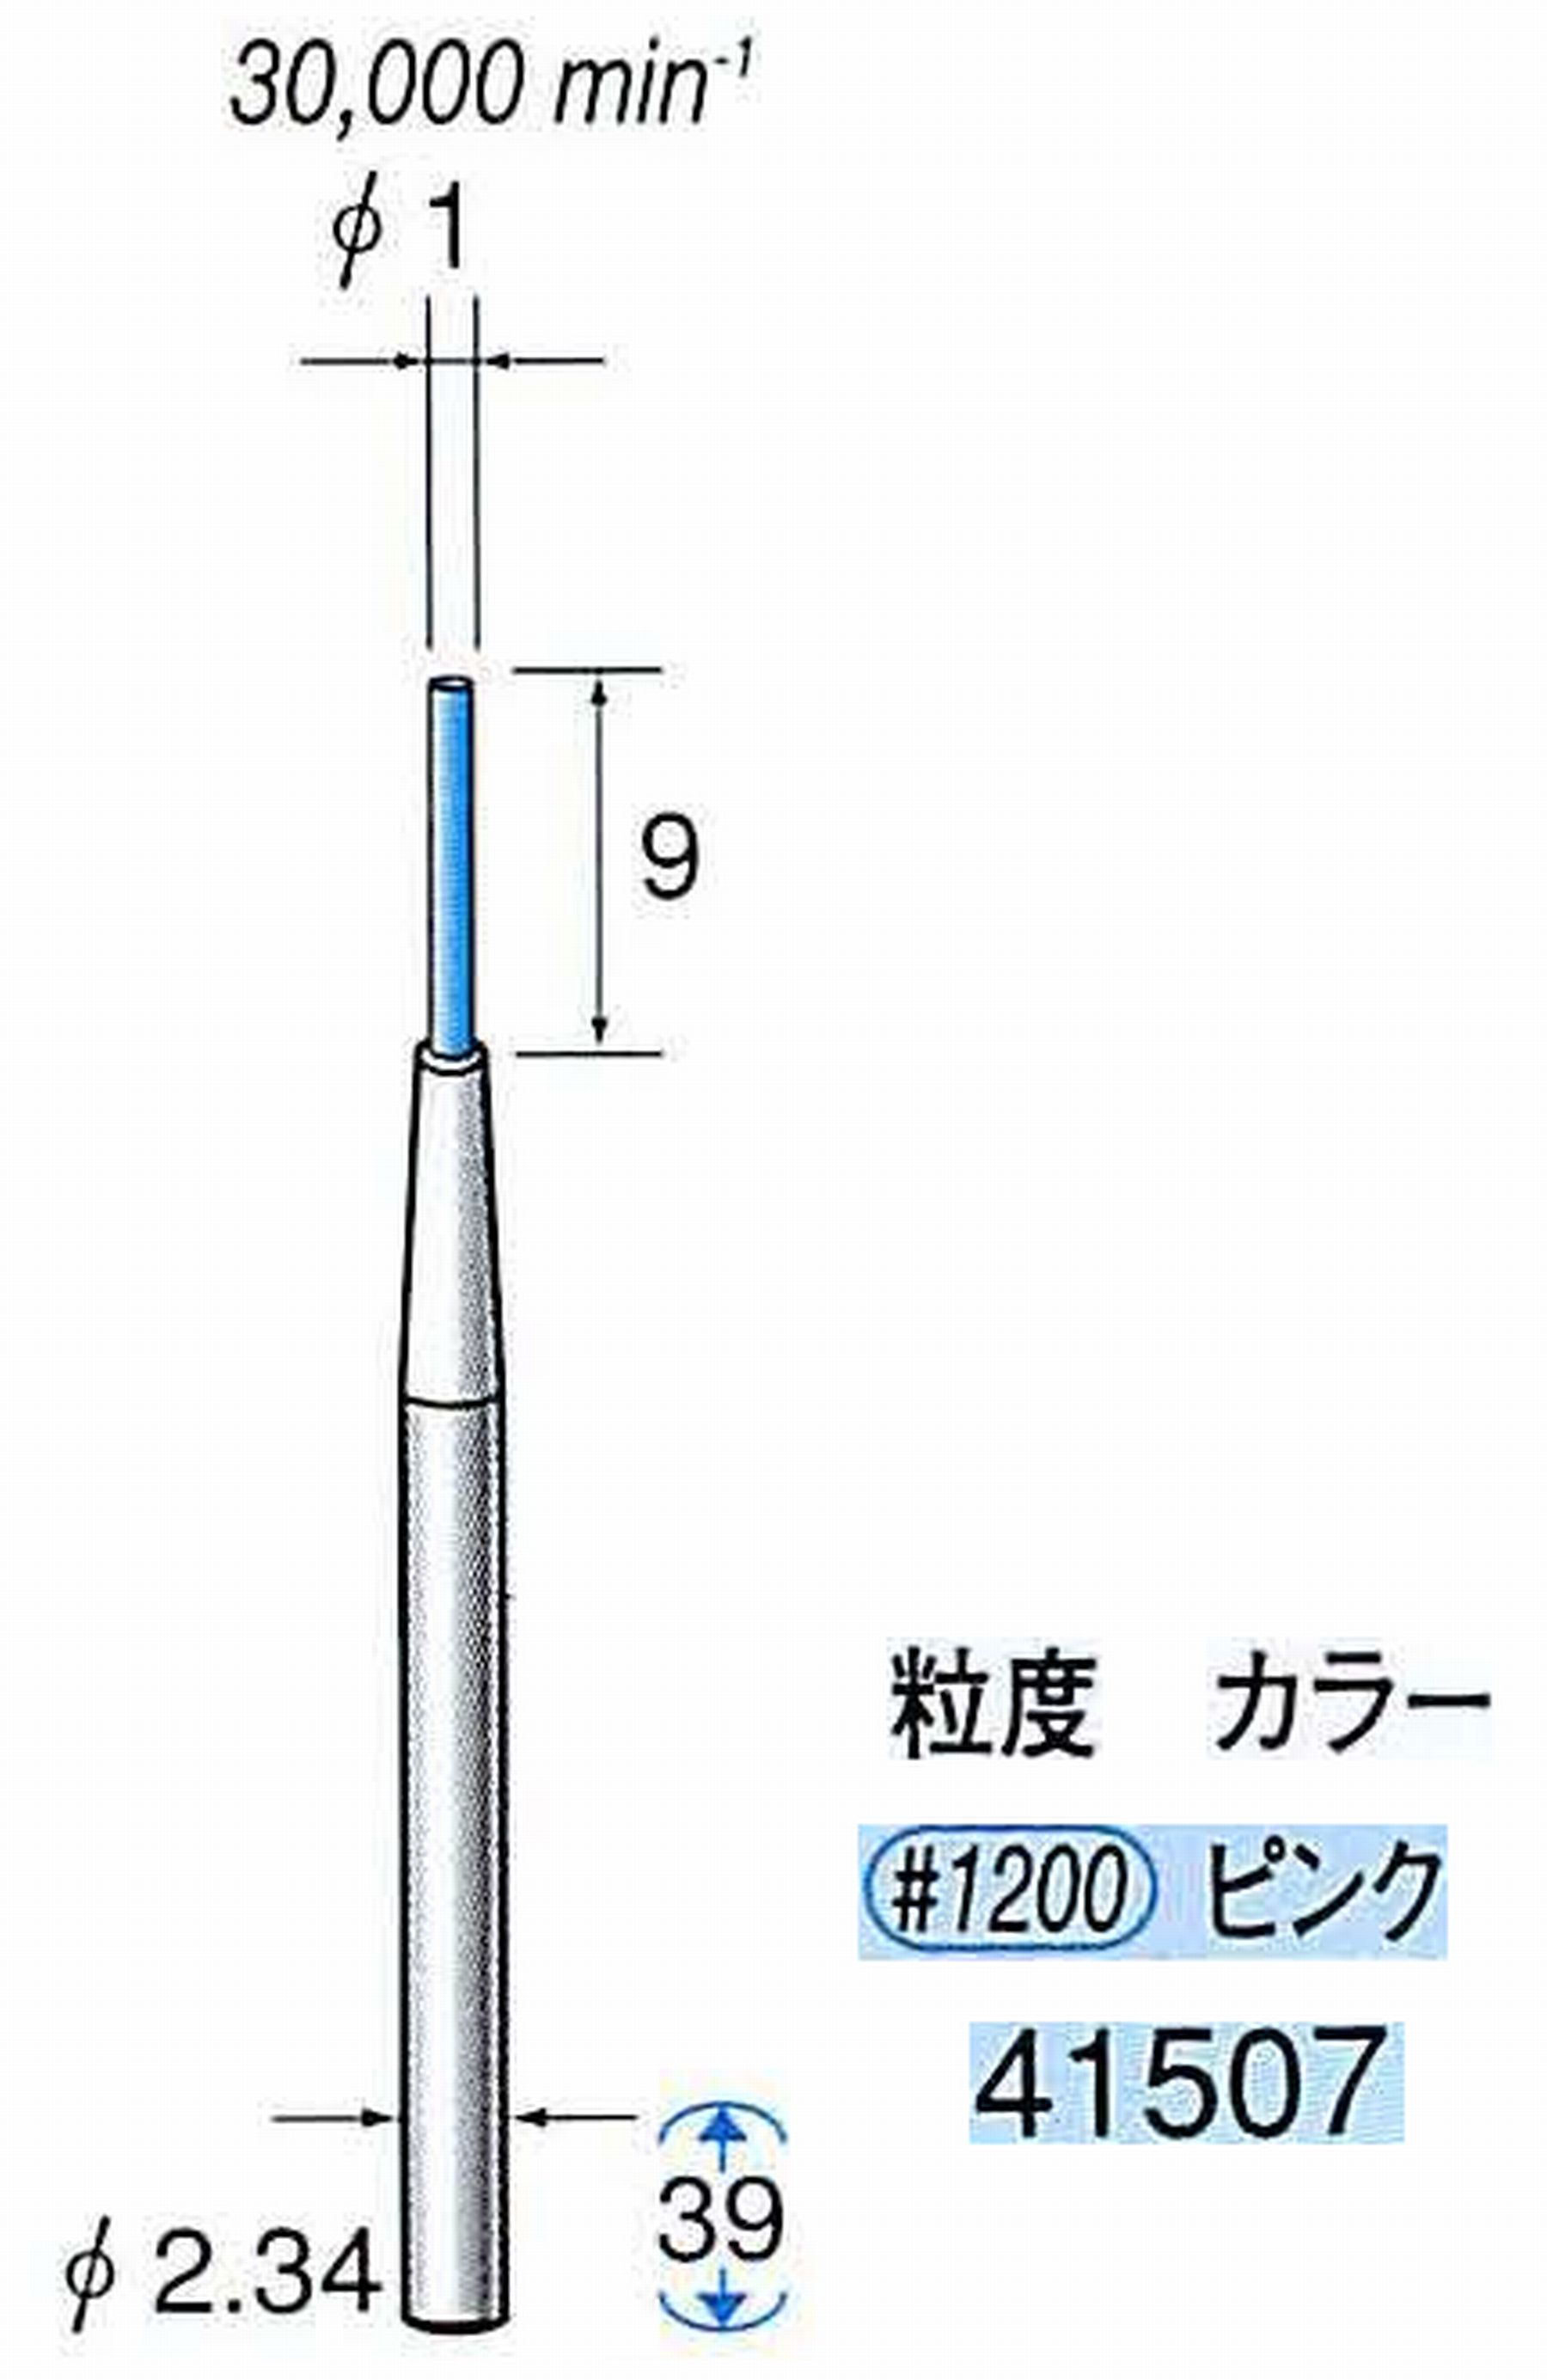 ナカニシ/NAKANISHI セラファイバー精密軸付砥石(カラー ピンク) 軸径(シャンク) φ2.34mm 41507